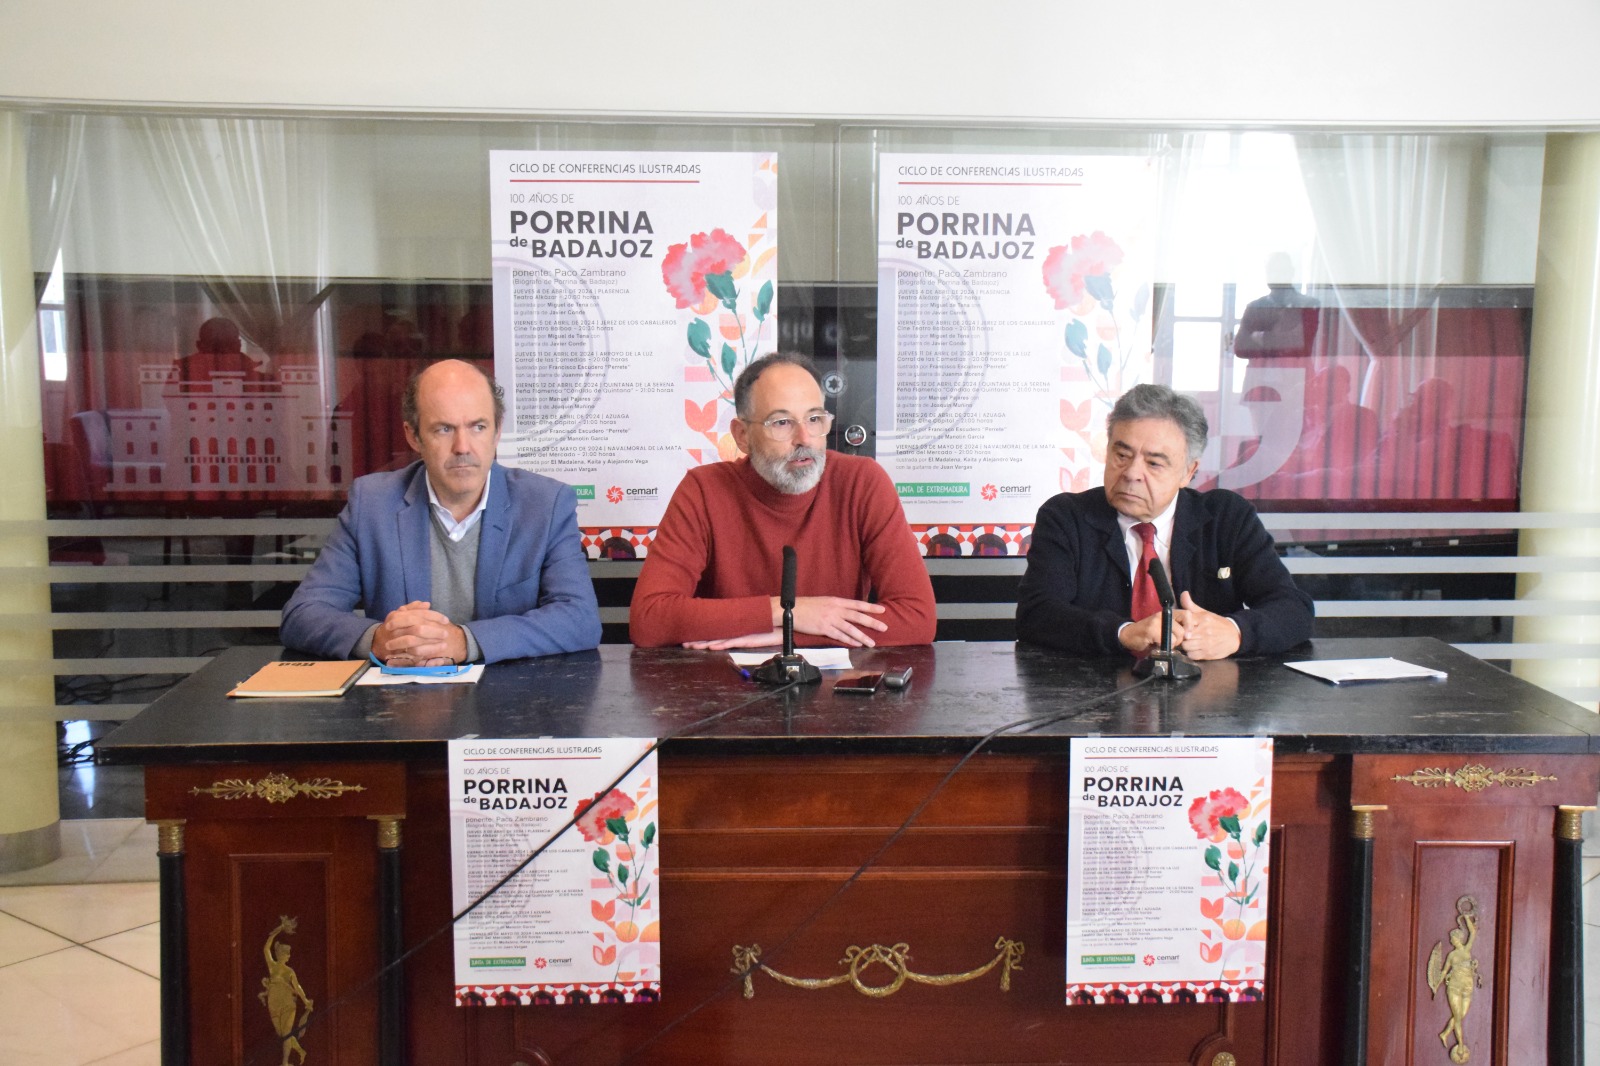 Image 1 of article La Junta de Extremadura celebra el legado del Porrina de Badajoz con un ciclo de conferencias en el centenario de su nacimiento